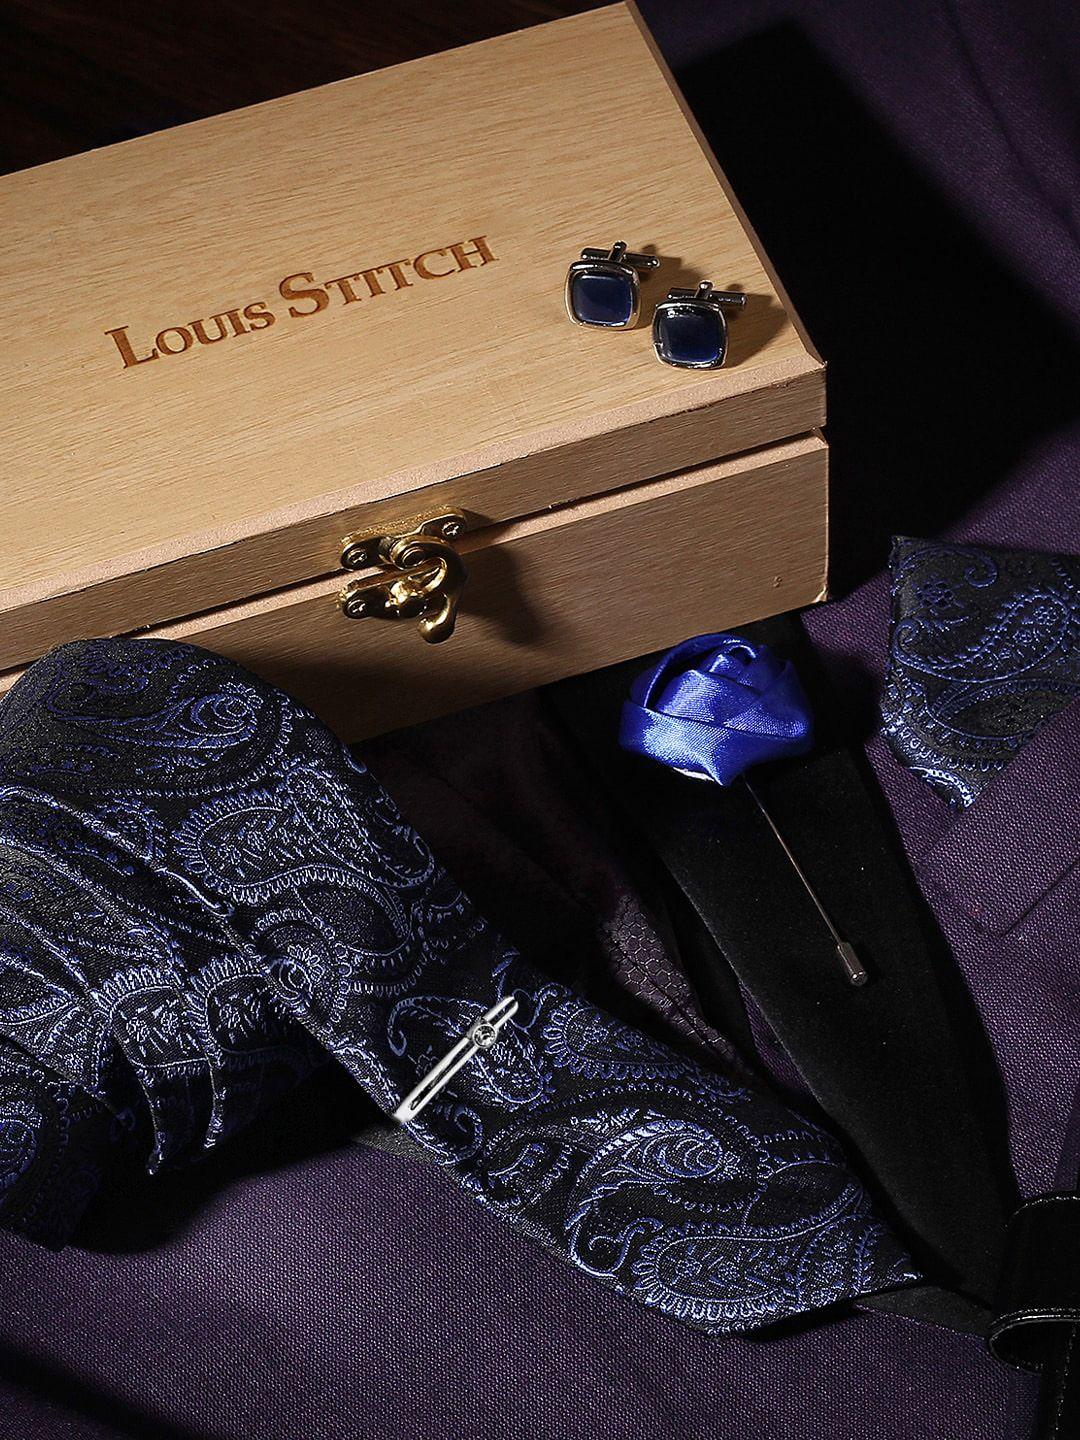 louis stitch men black & navy blue accessories gift set